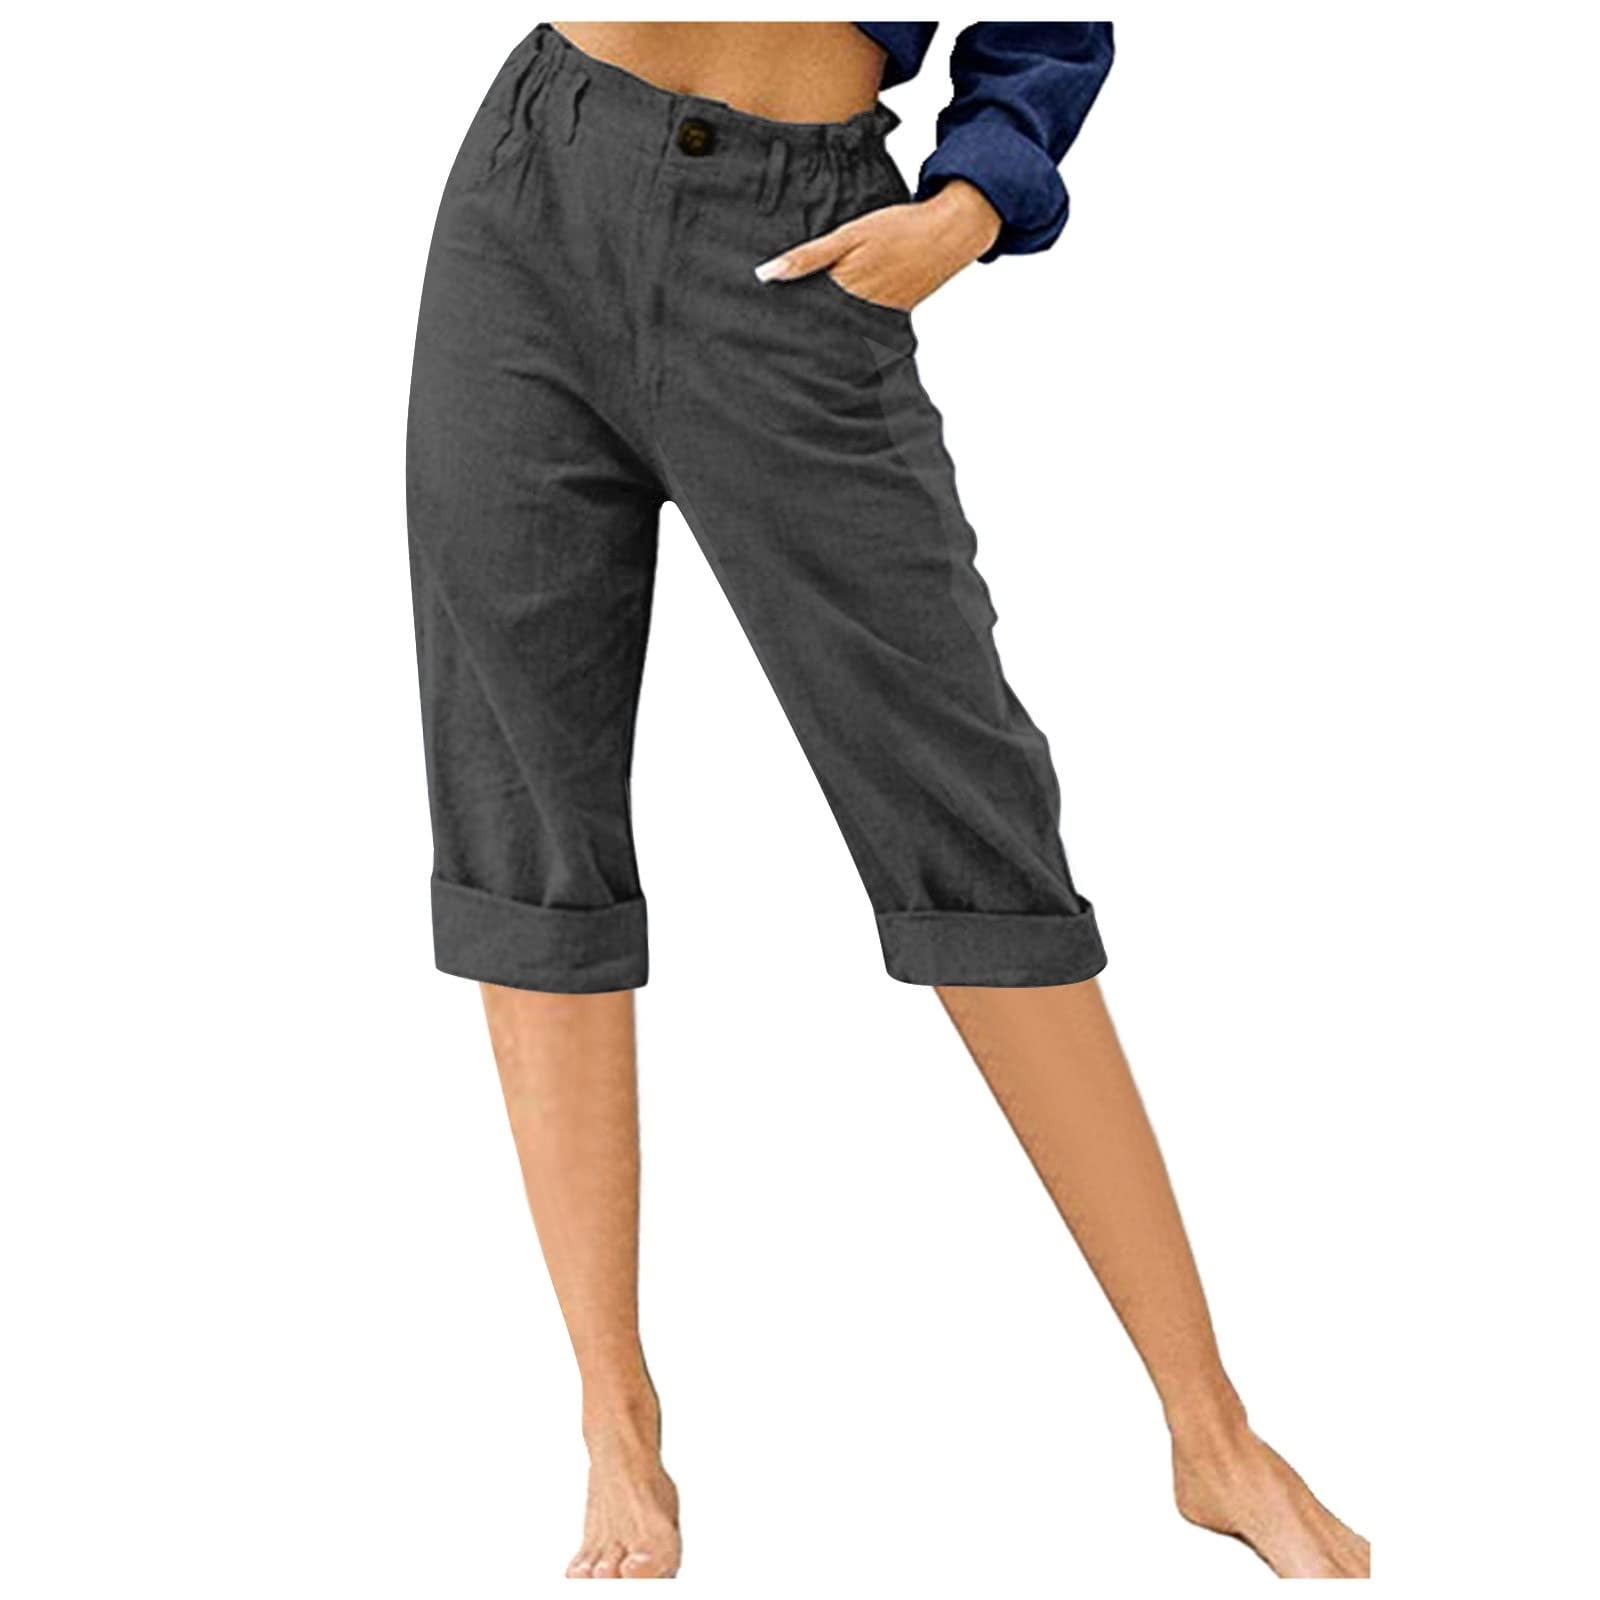 Women's Stretch Cropped & Capri Pants